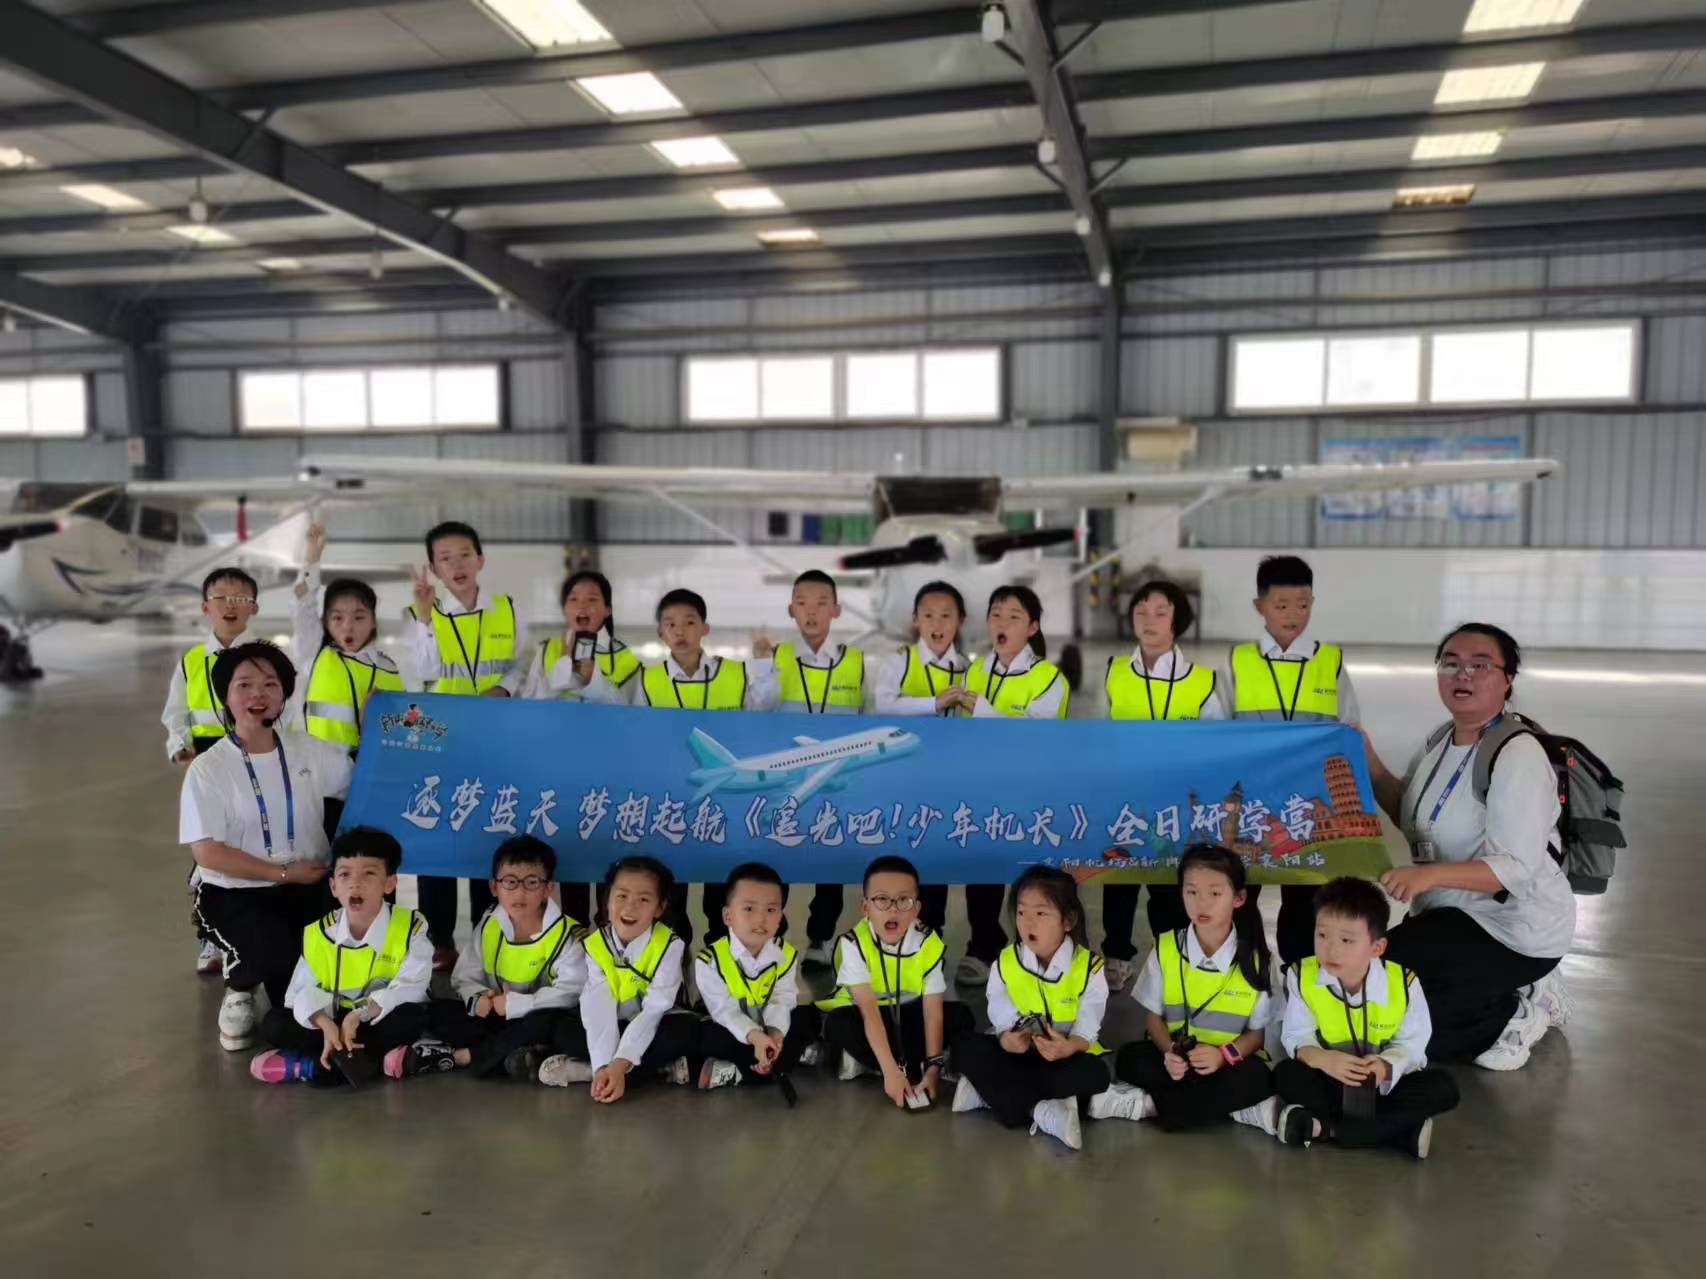 襄阳机场成功开展首次航空研学活动